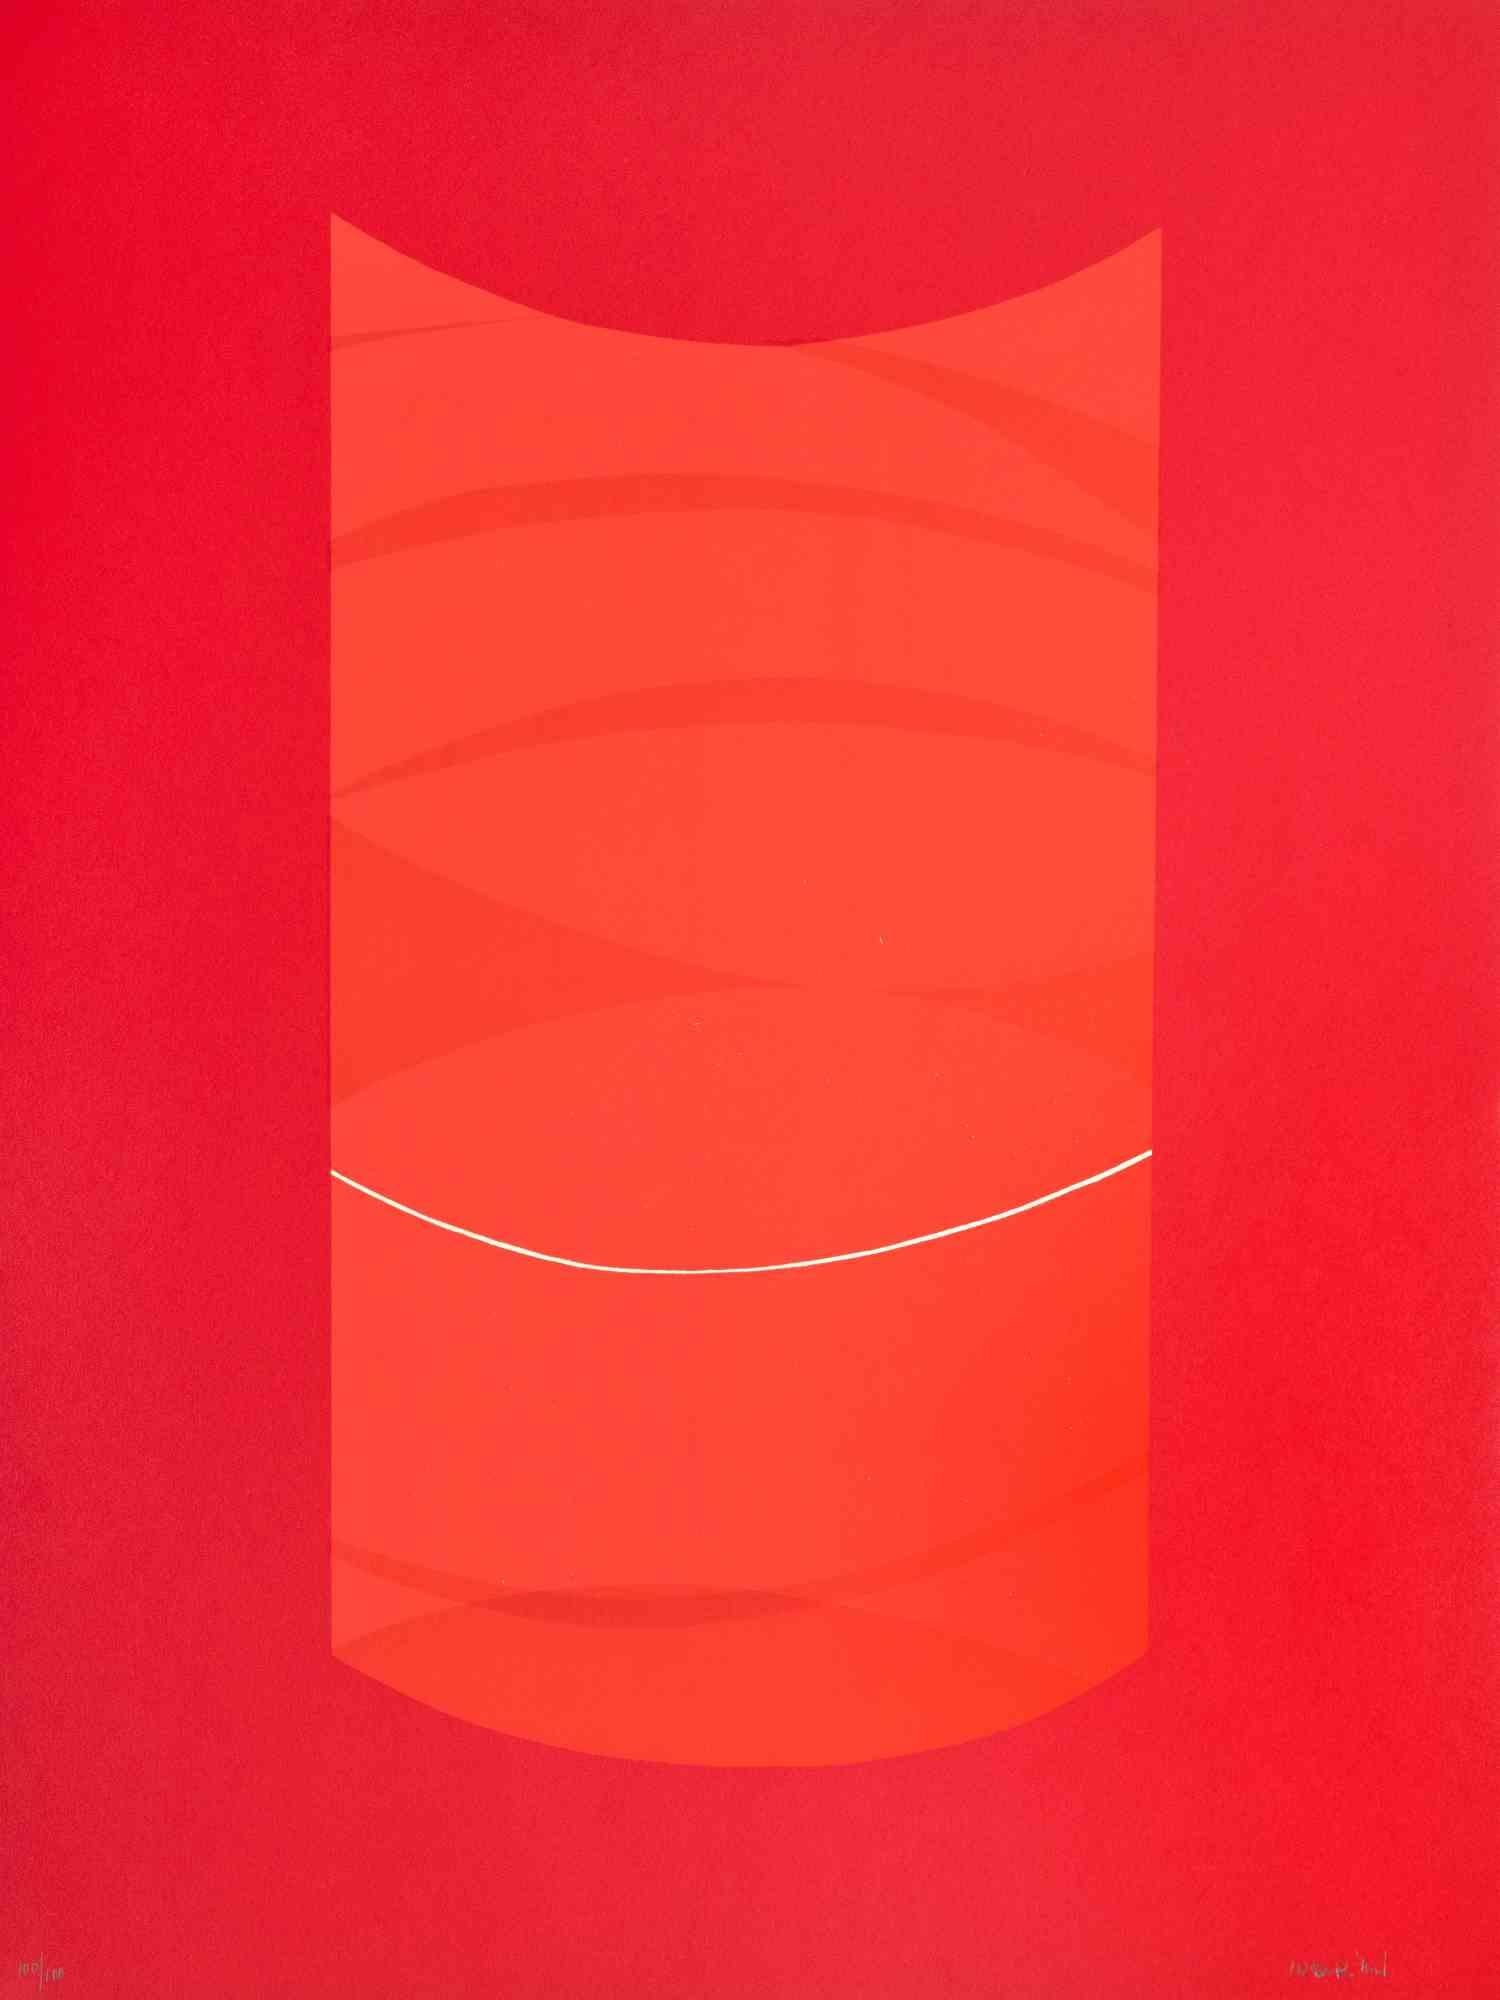 Red One est une œuvre d'art contemporain réalisée par Lorenzo Indrimi dans les années 1970.

Lithographie en couleurs mélangées.

Signé à la main et daté dans la marge inférieure.

Edition de 73/100

